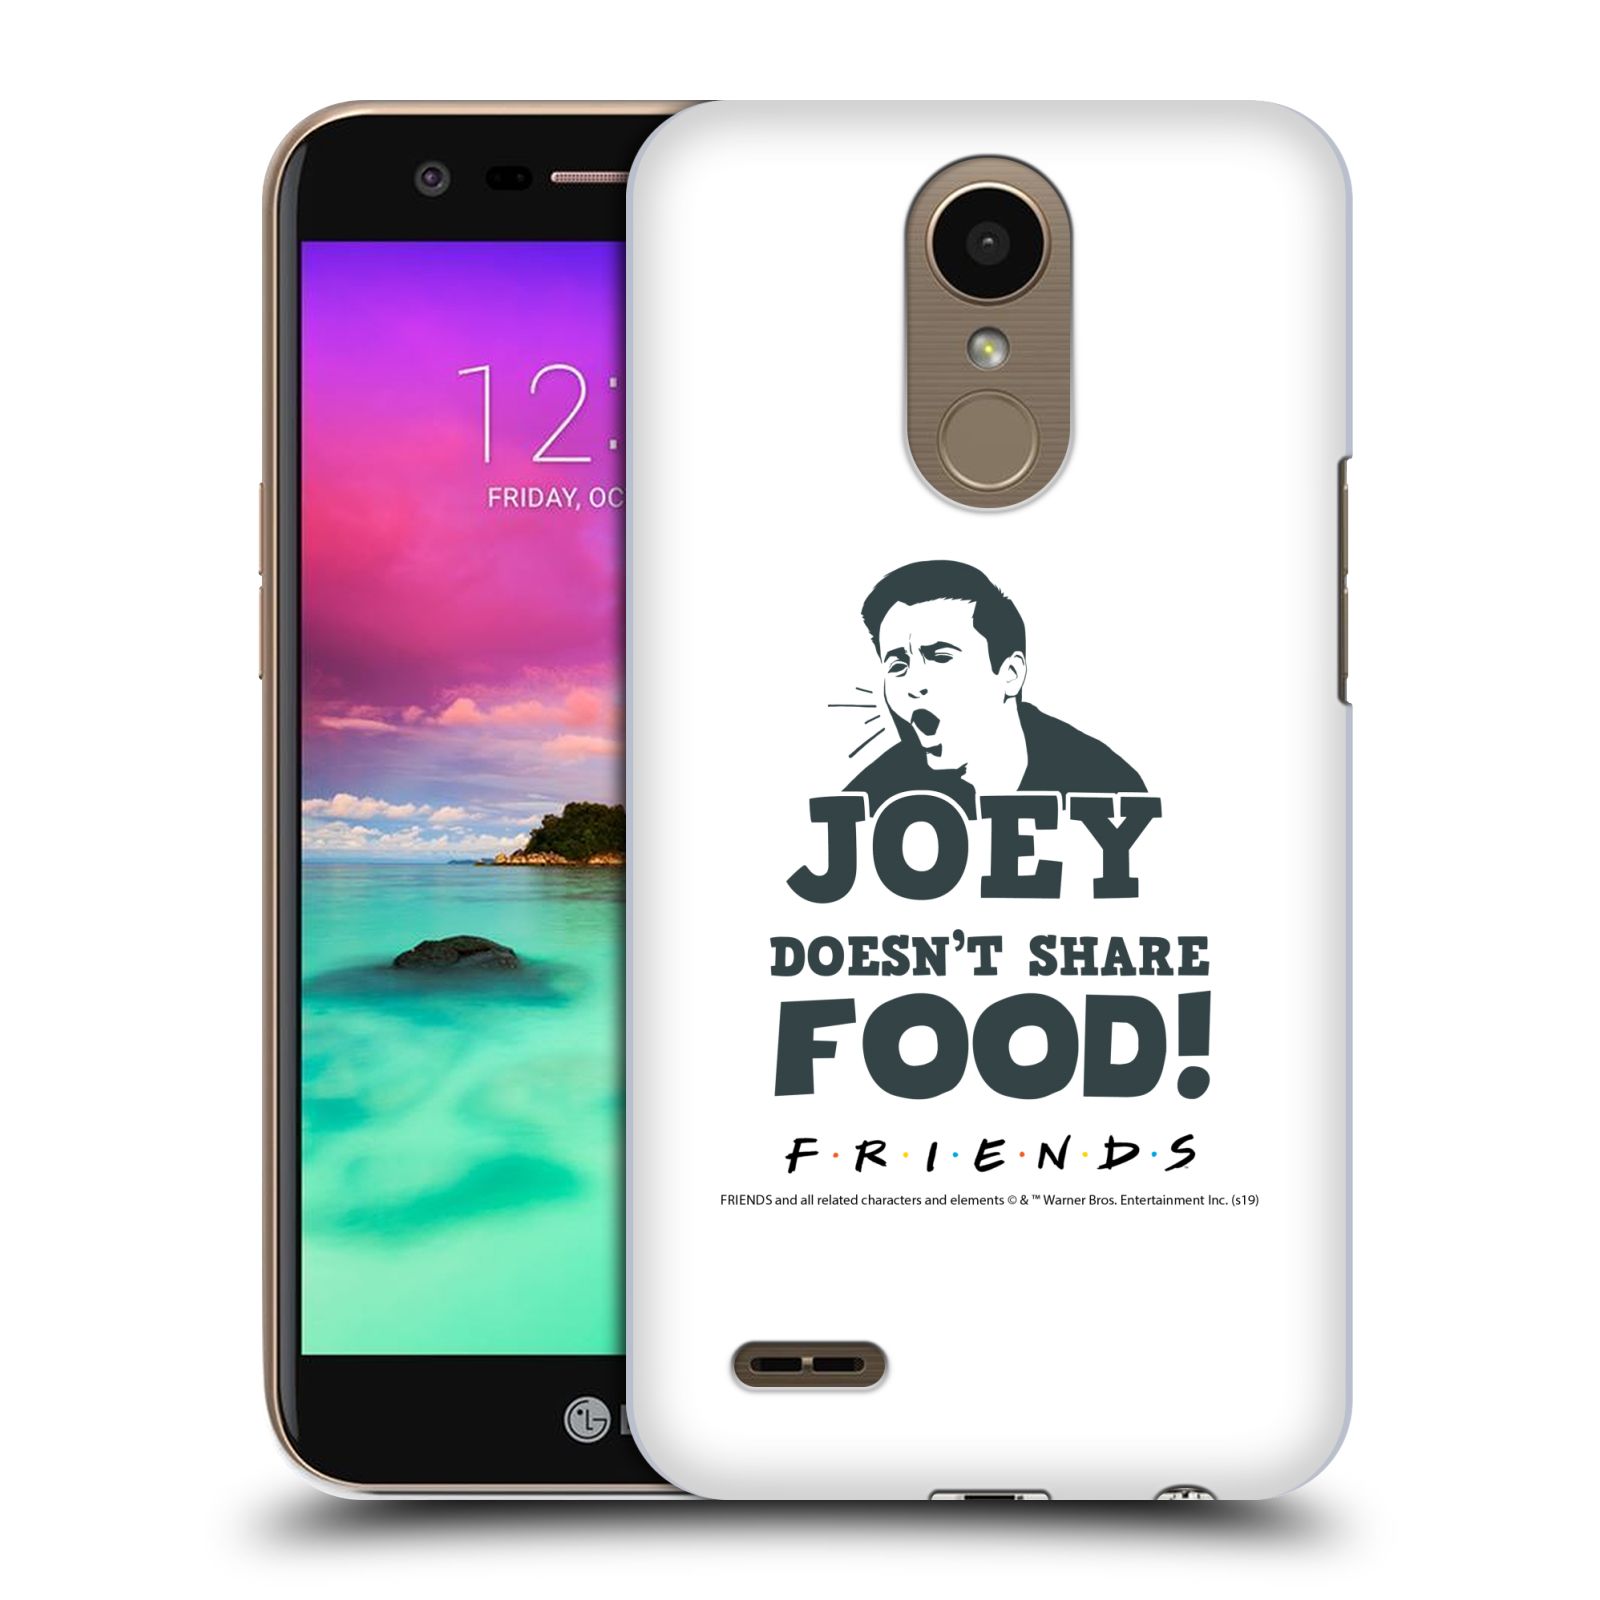 Pouzdro na mobil LG K10 2017 / K10 2017 DUAL SIM - HEAD CASE - Seriál Přátelé - Joey se o jídlo nedělí